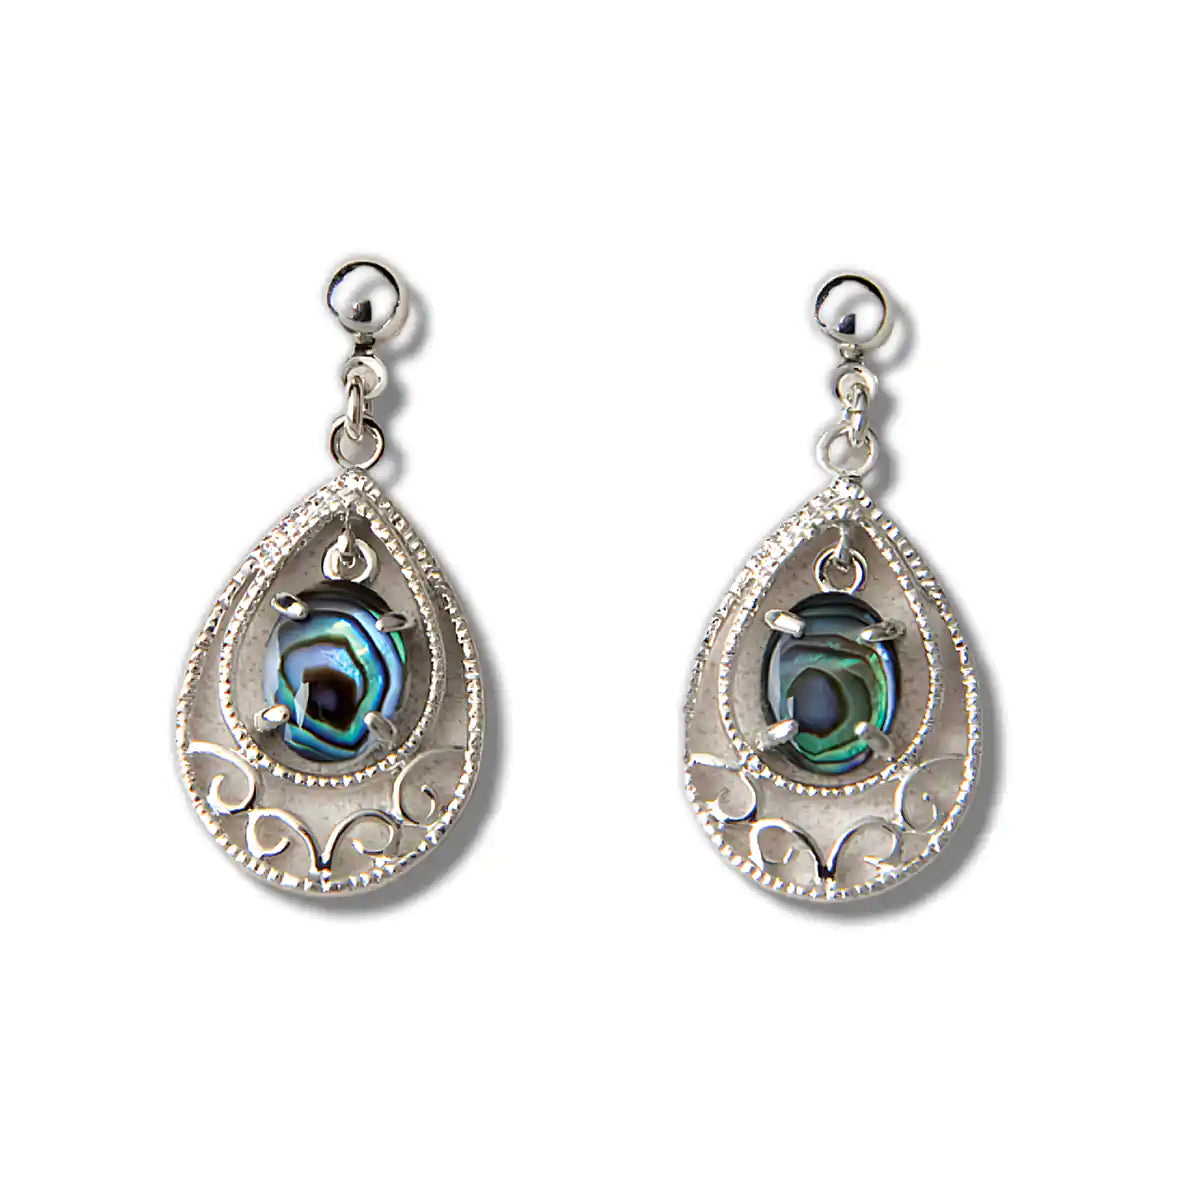 Glacier pearle vintage elegance earrings